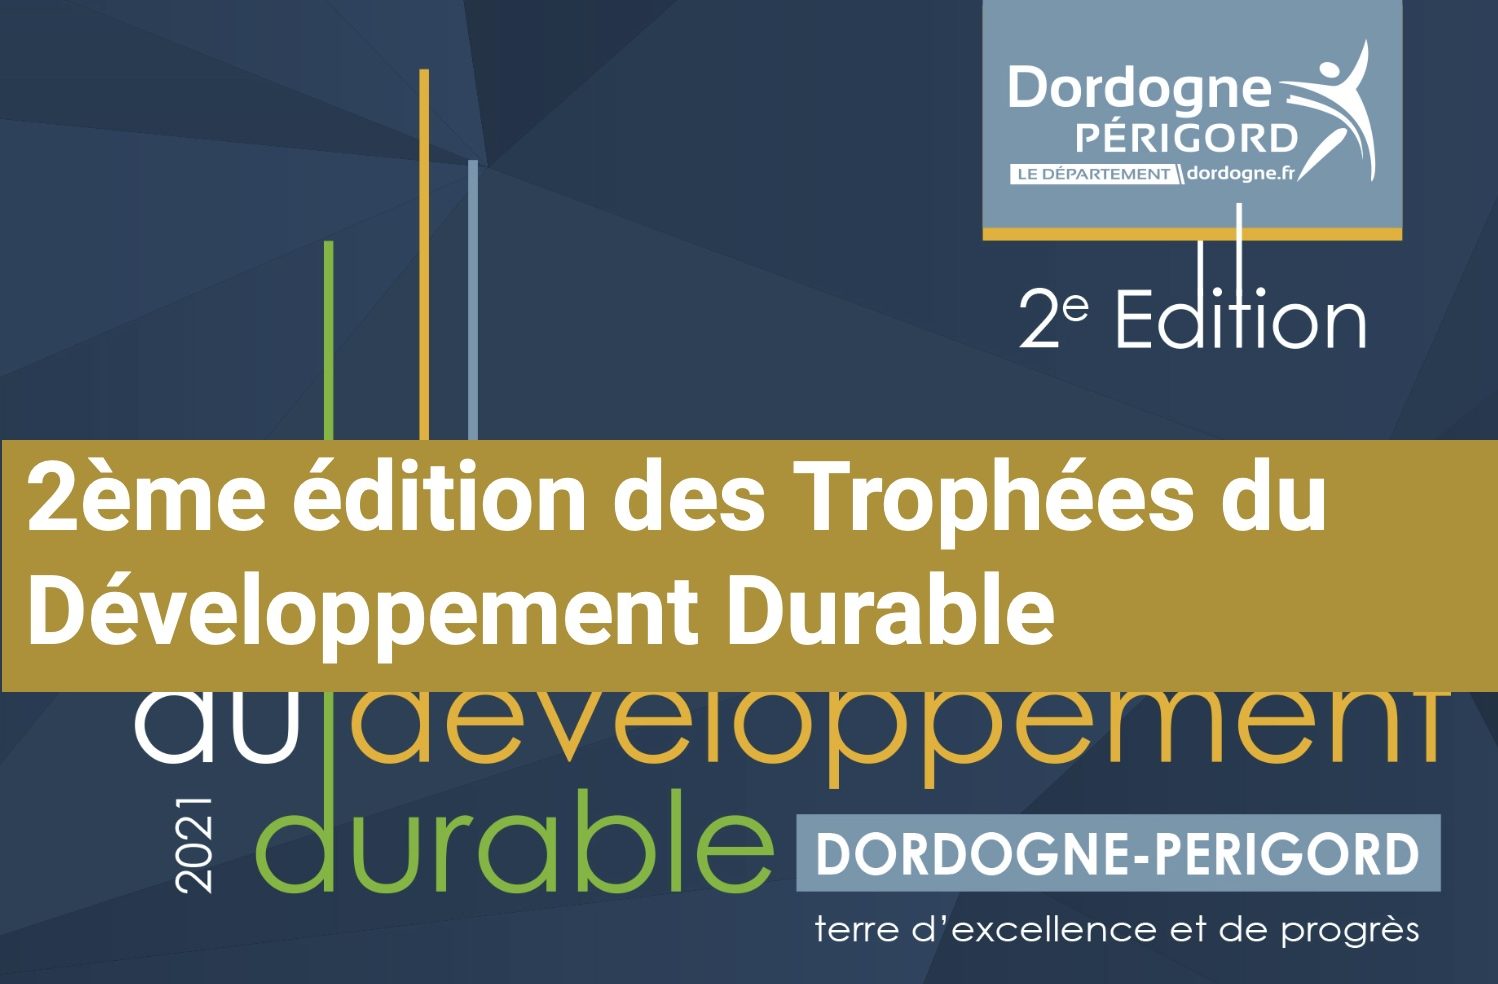 Bannière 2ème édition des Trophées du Développement Durable 2021 Département Dordogne Périgord